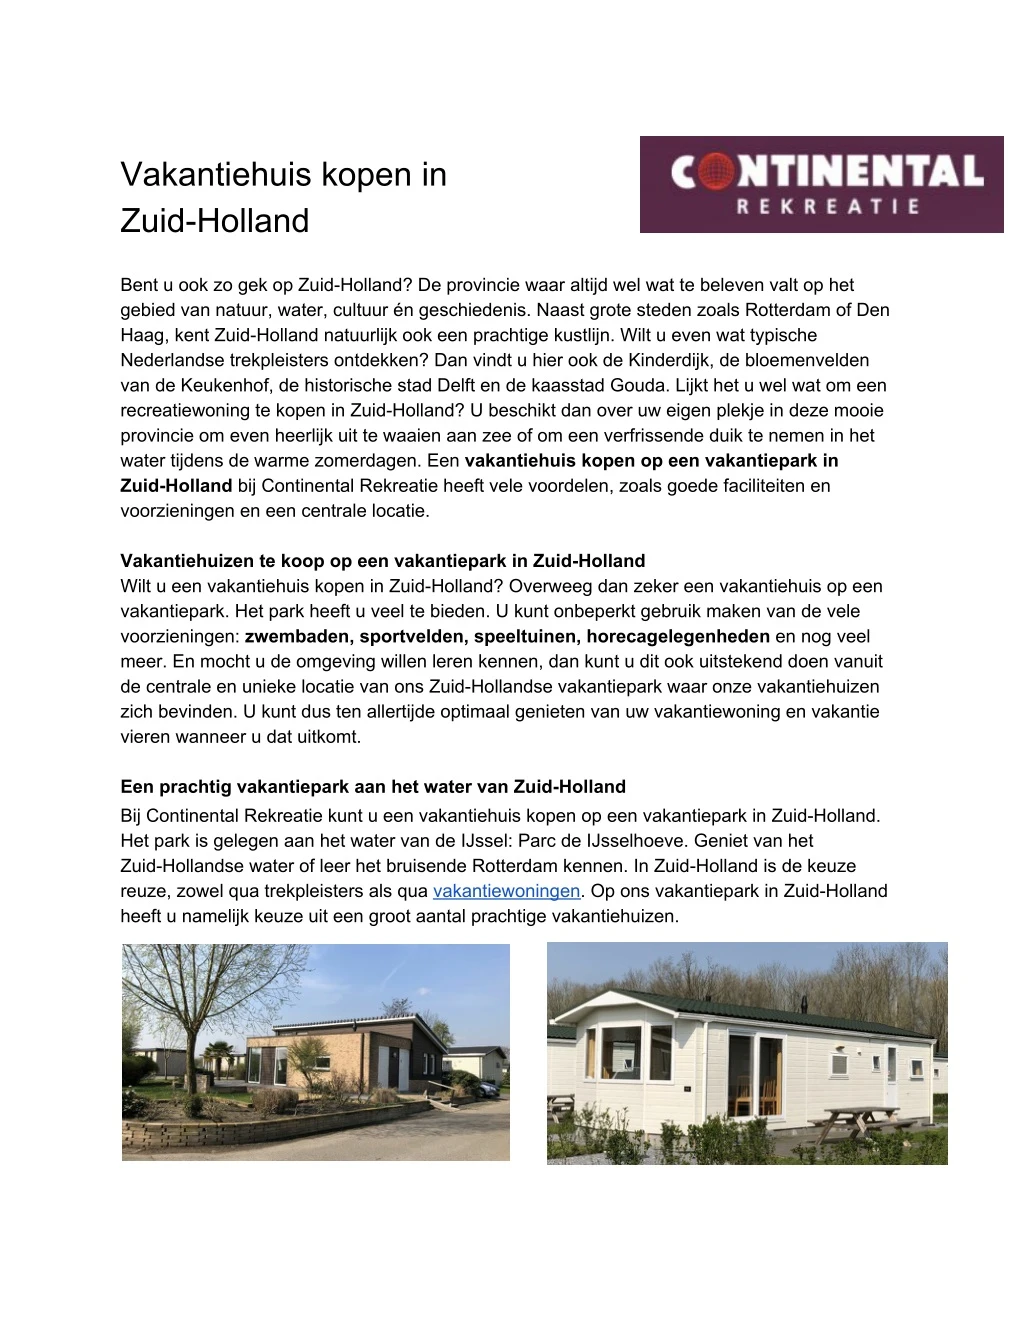 vakantiehuis kopen in zuid holland